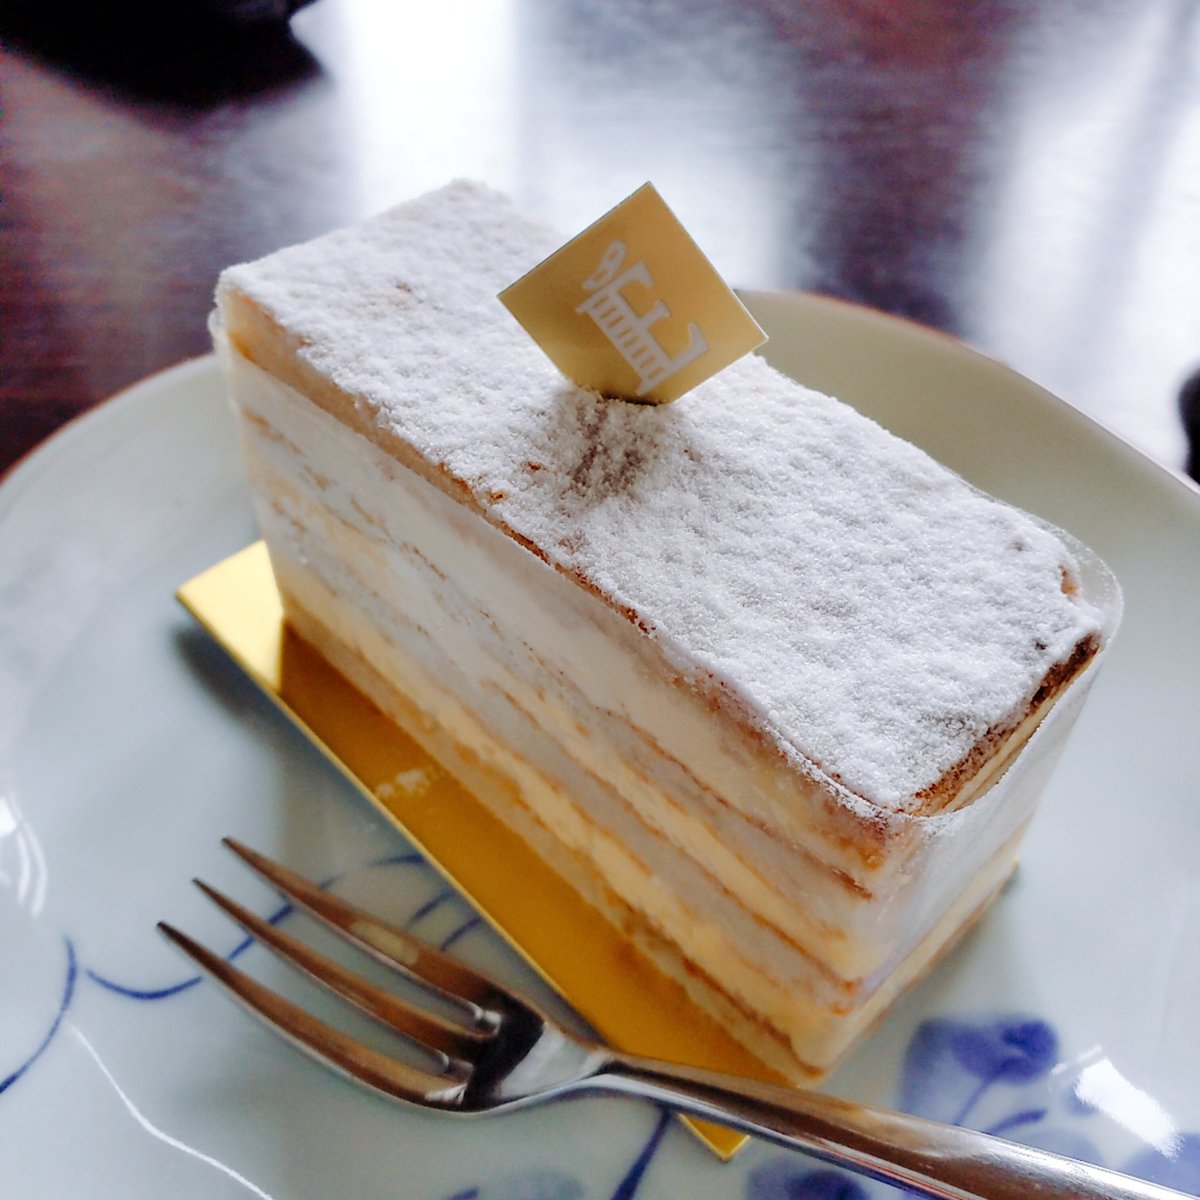 Mariko Bunzo على تويتر エシレのケーキ試食 ミゼラブル ミルフォイユ シャポー やっぱりガトーエシレナチュールは買えないのでした もう15年くらいケーキ要らないですオイラは